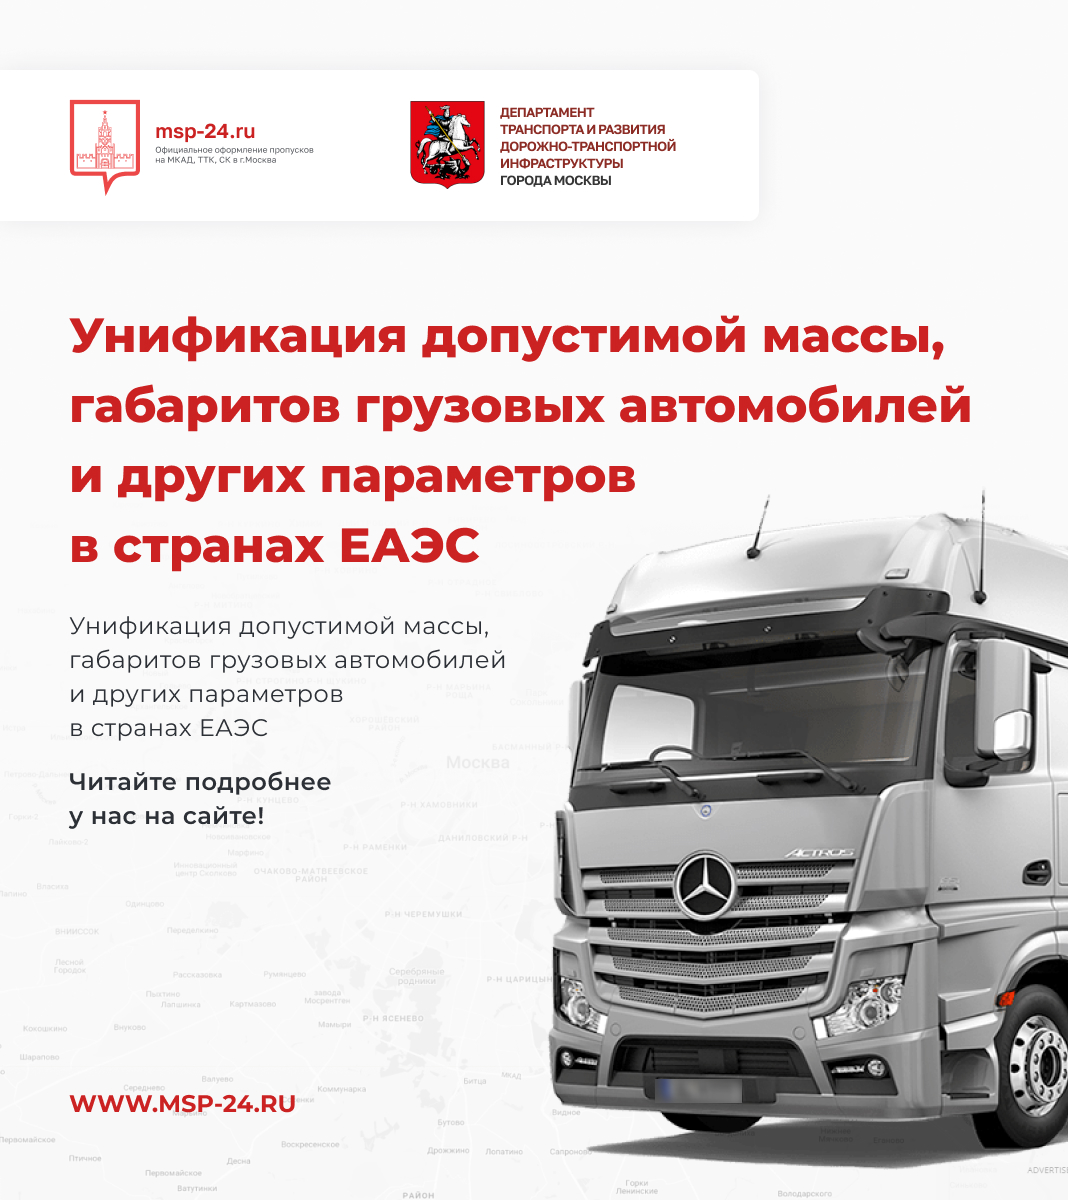 Унификация допустимой массы, габаритов грузовых автомобилей и других параметров в странах ЕАЭС